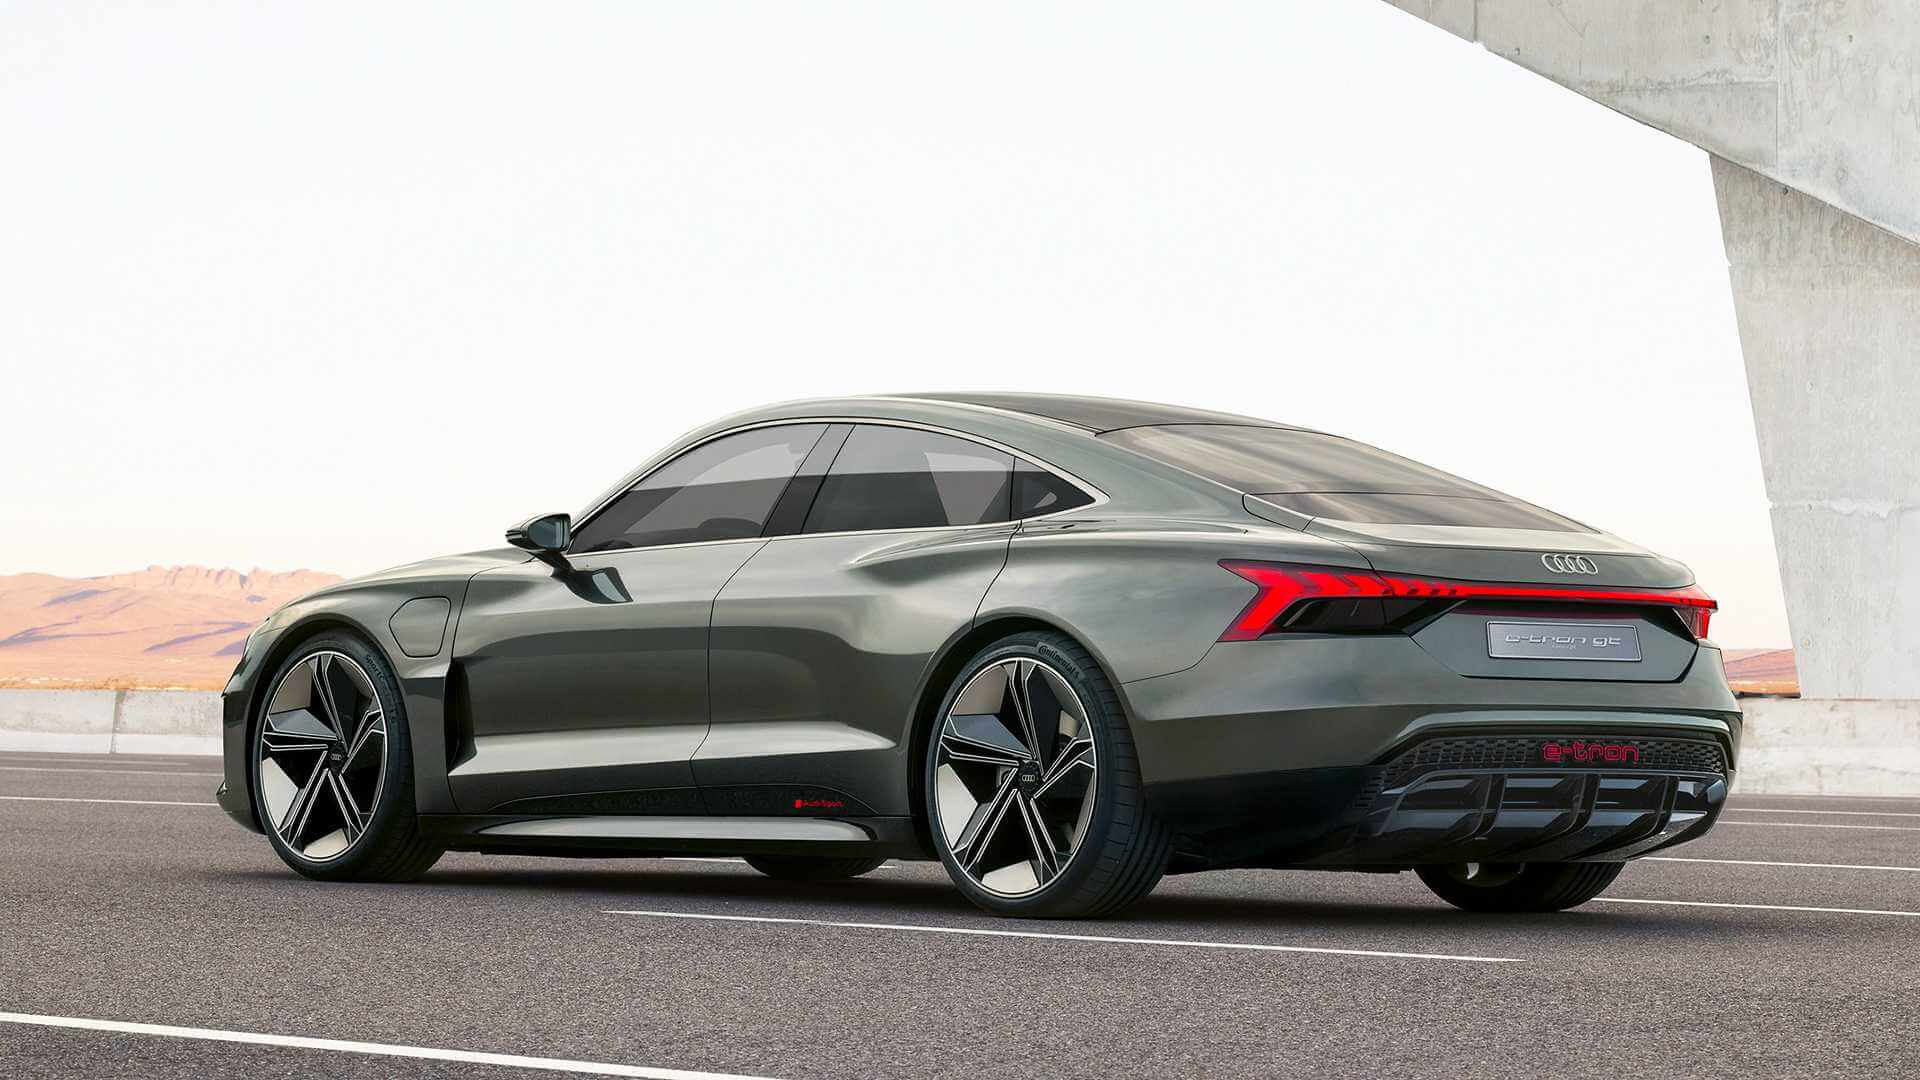  Audi E Tron Gt Concept